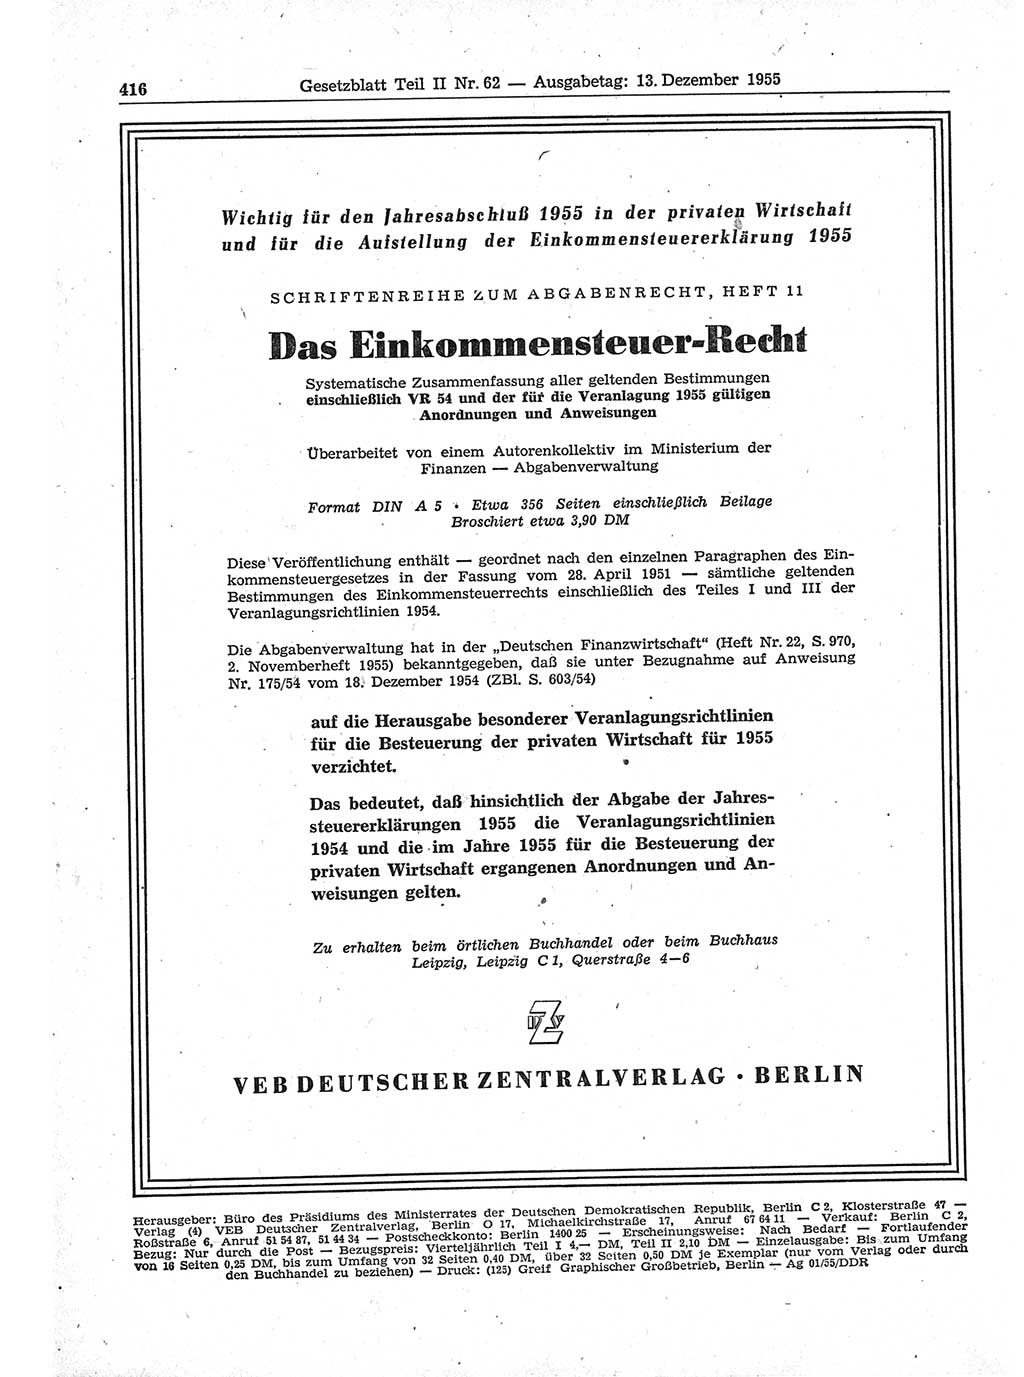 Gesetzblatt (GBl.) der Deutschen Demokratischen Republik (DDR) Teil ⅠⅠ 1955, Seite 416 (GBl. DDR ⅠⅠ 1955, S. 416)